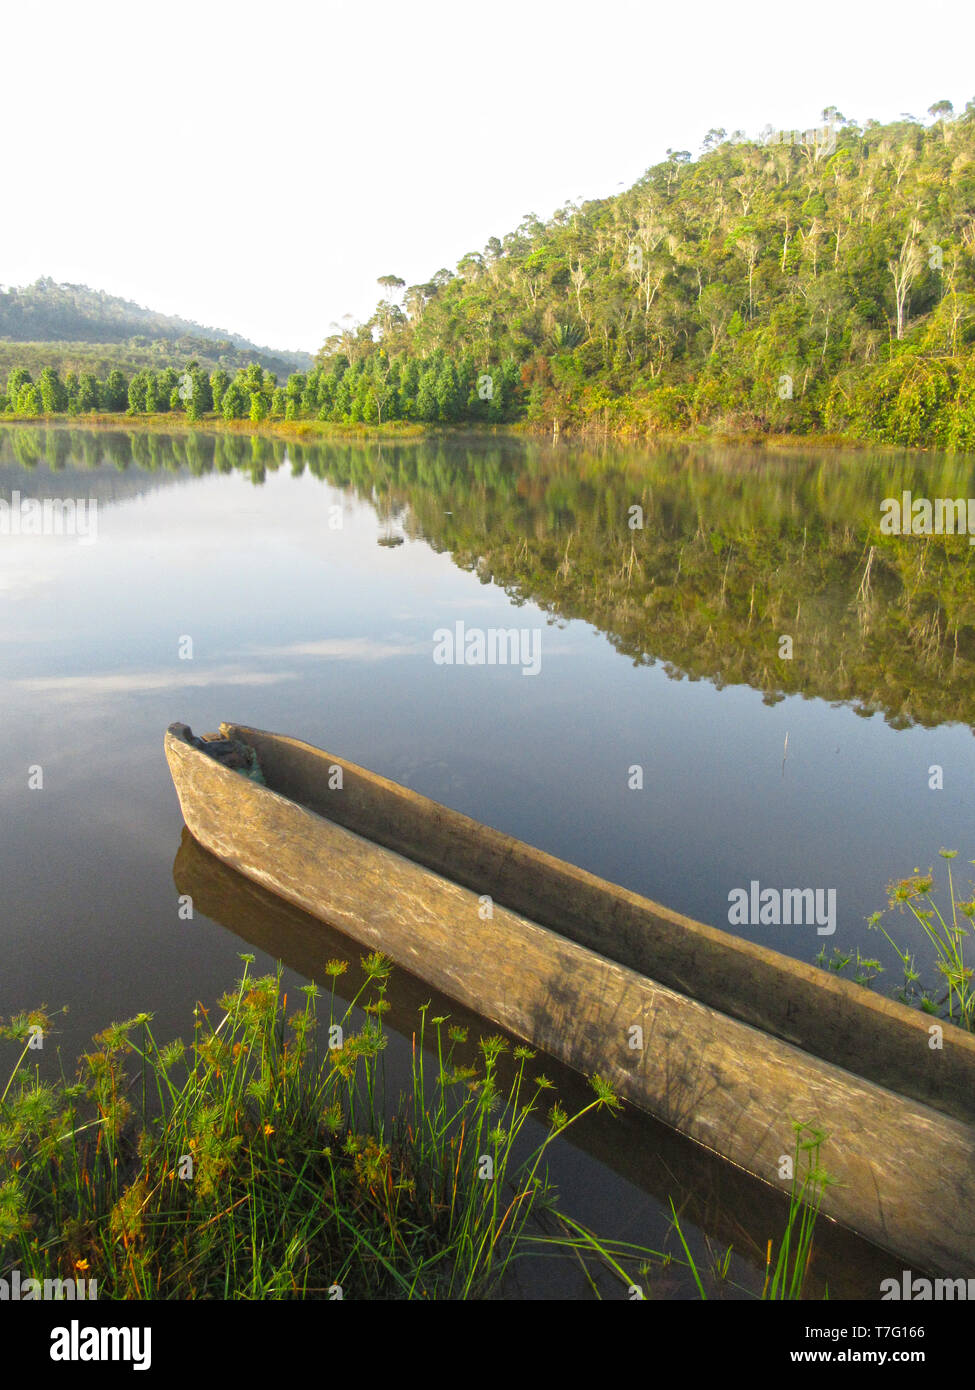 Bateau en bois reposant le long du rivage dans un lac naturel près de Parc National Parc Mantadia- Andasibe (Périnet), Madagascar, sur un beau matin serein. Banque D'Images